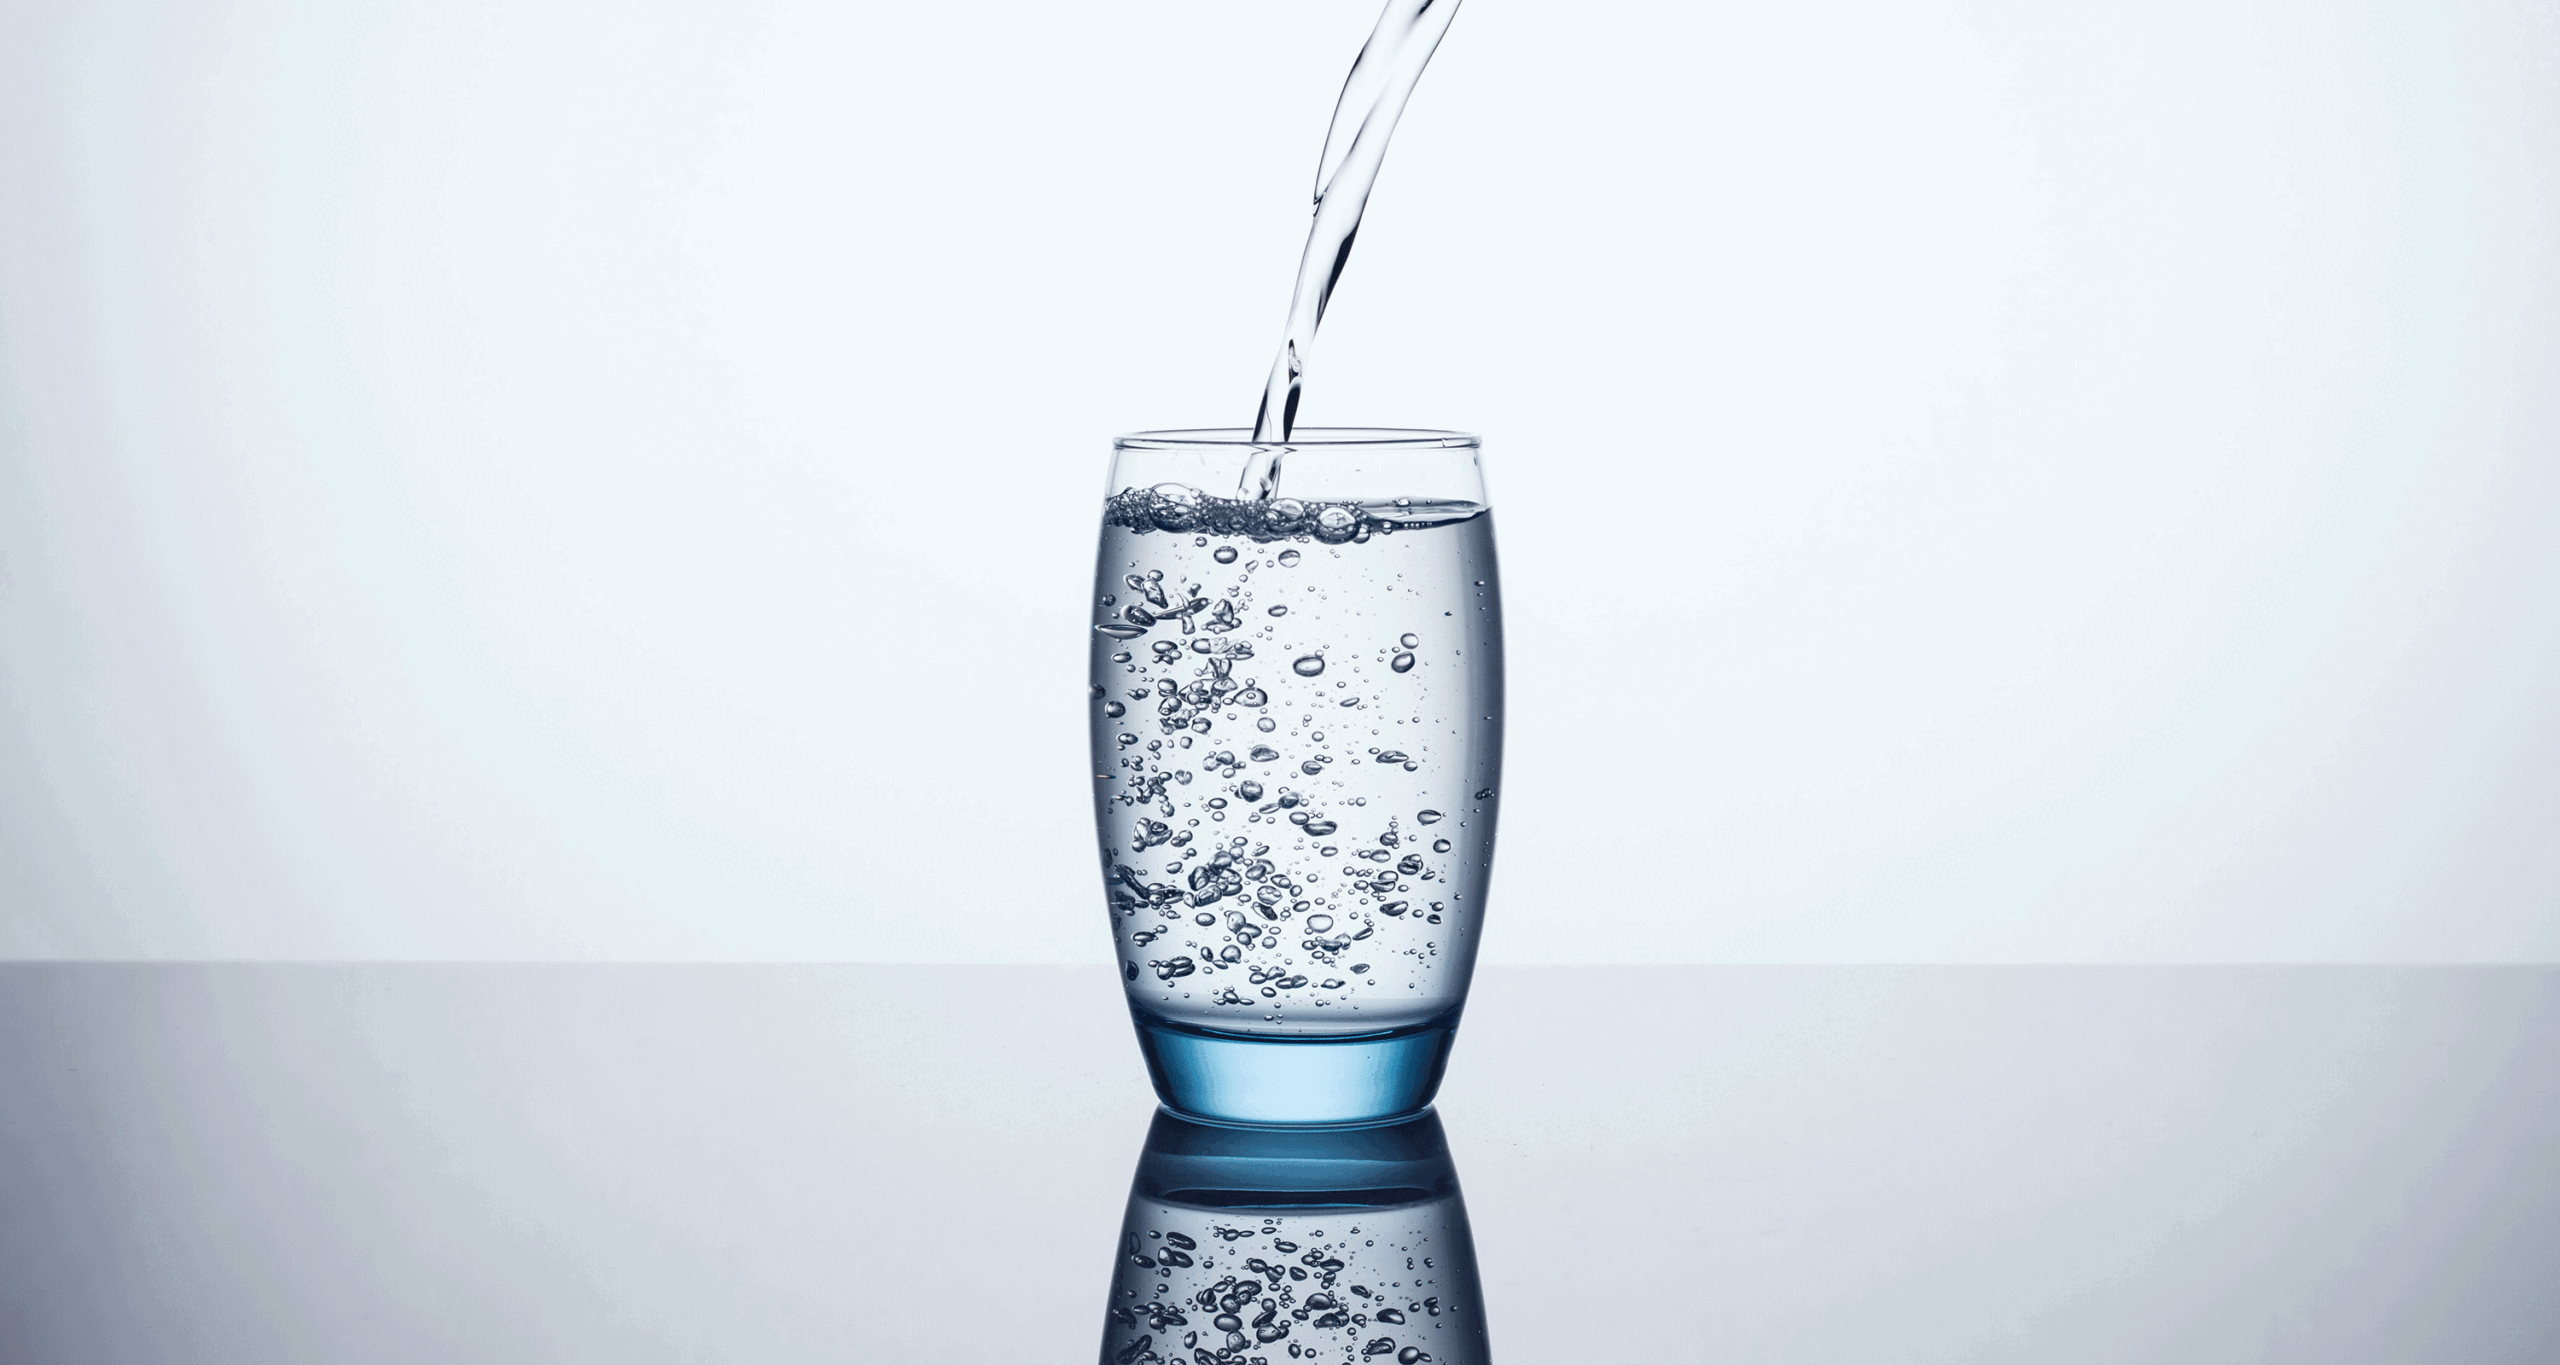 لاغری در خانه نوشیدن آب